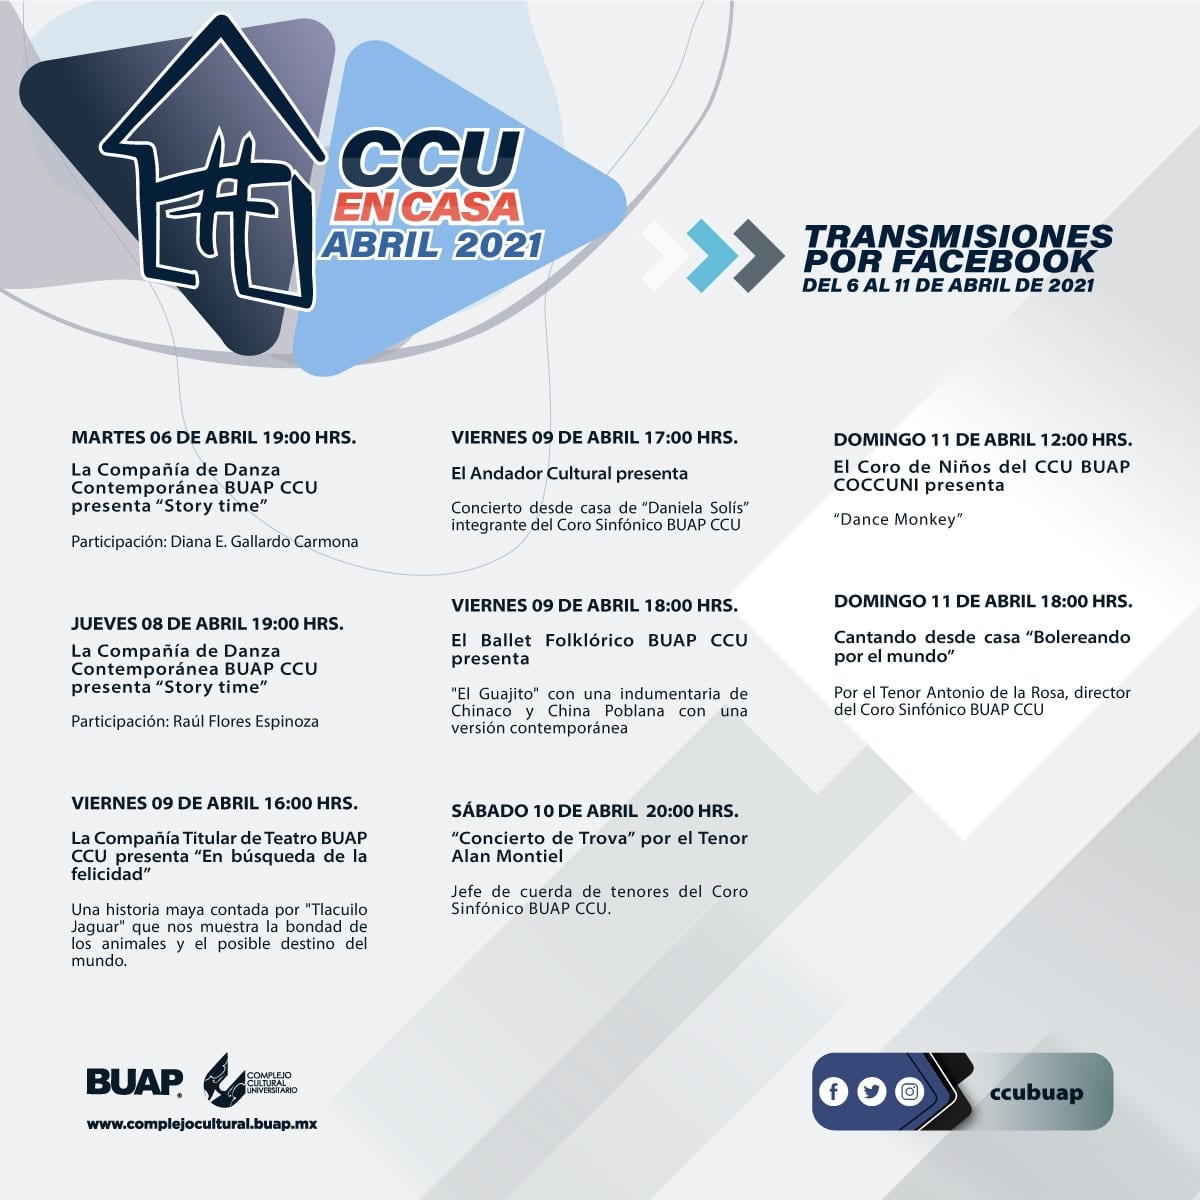 CCU BUAP en casa presenta su cartelera del 6 al 11 de abril